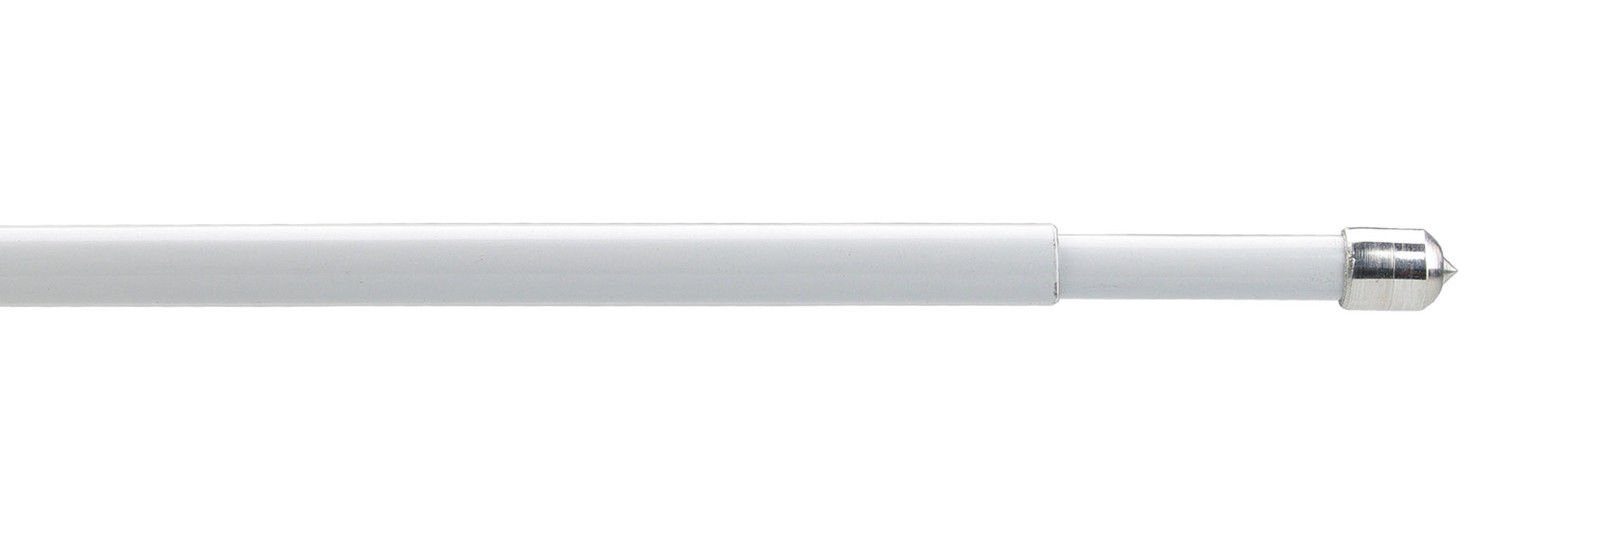 Klemmstange Klemmstange Gardinenstange Exclusiv - Standart einseitig Farbe: weiß, rewagi, geklemmt, Verkaufseinheit: 2 Stück